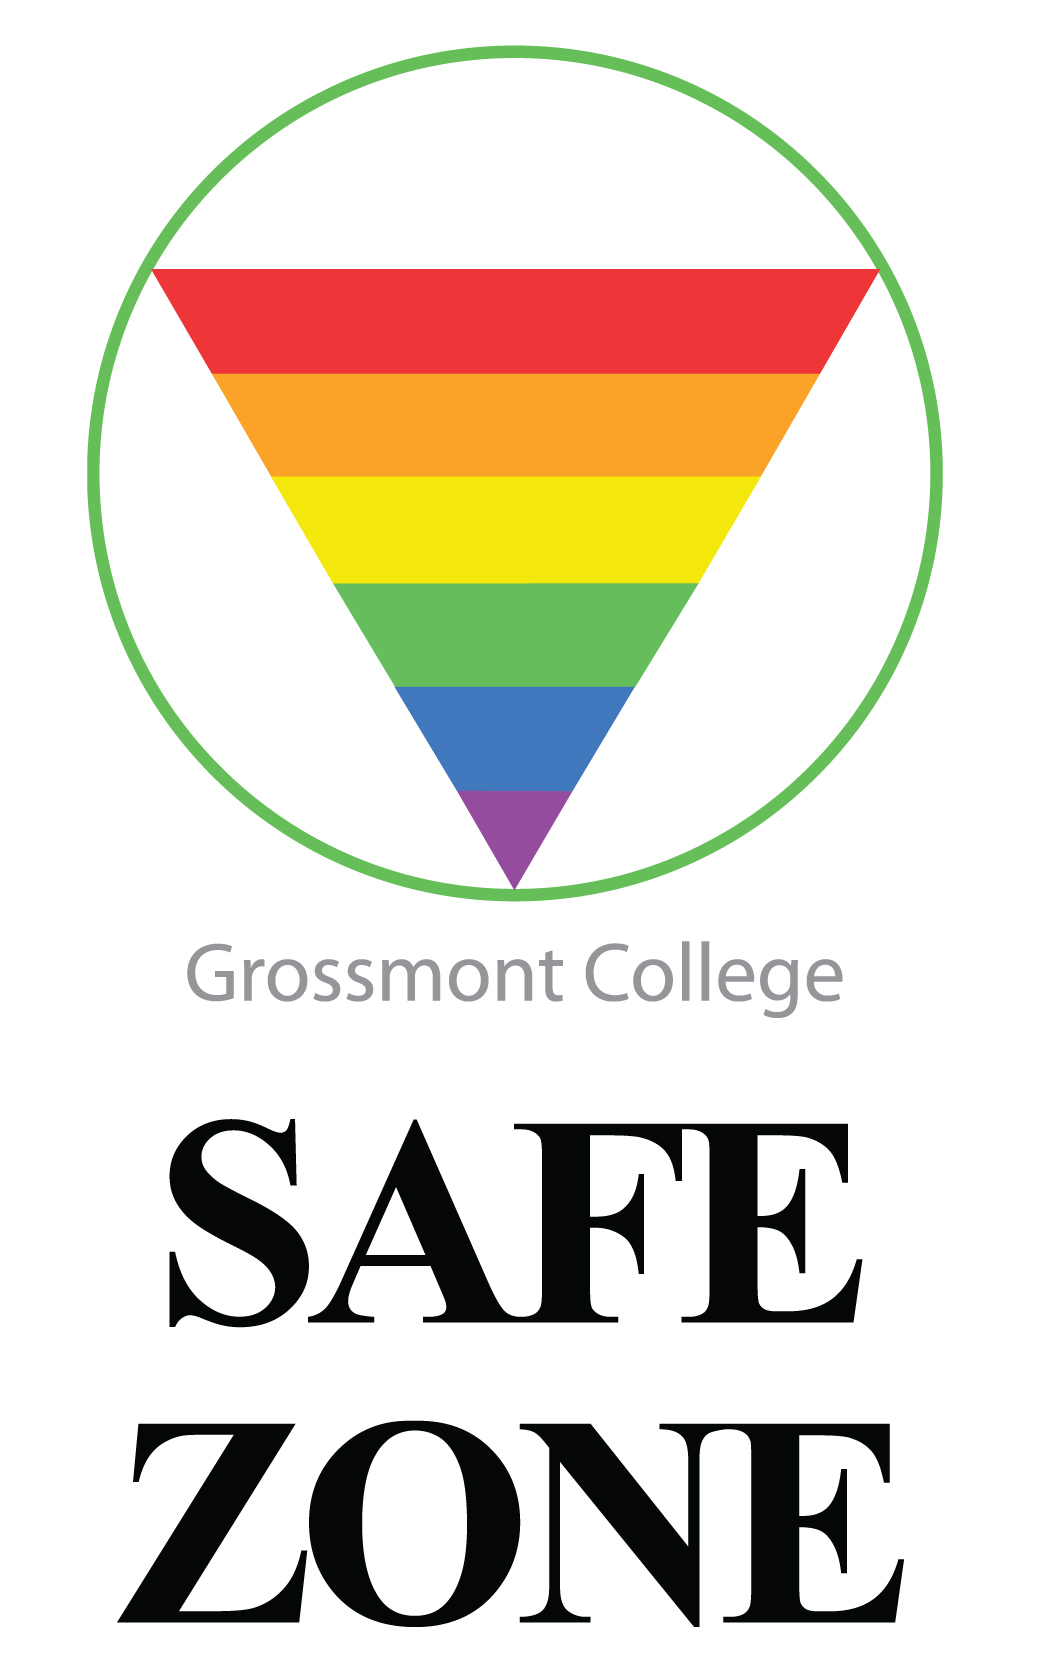 Grossmont College Safe Zone Logo